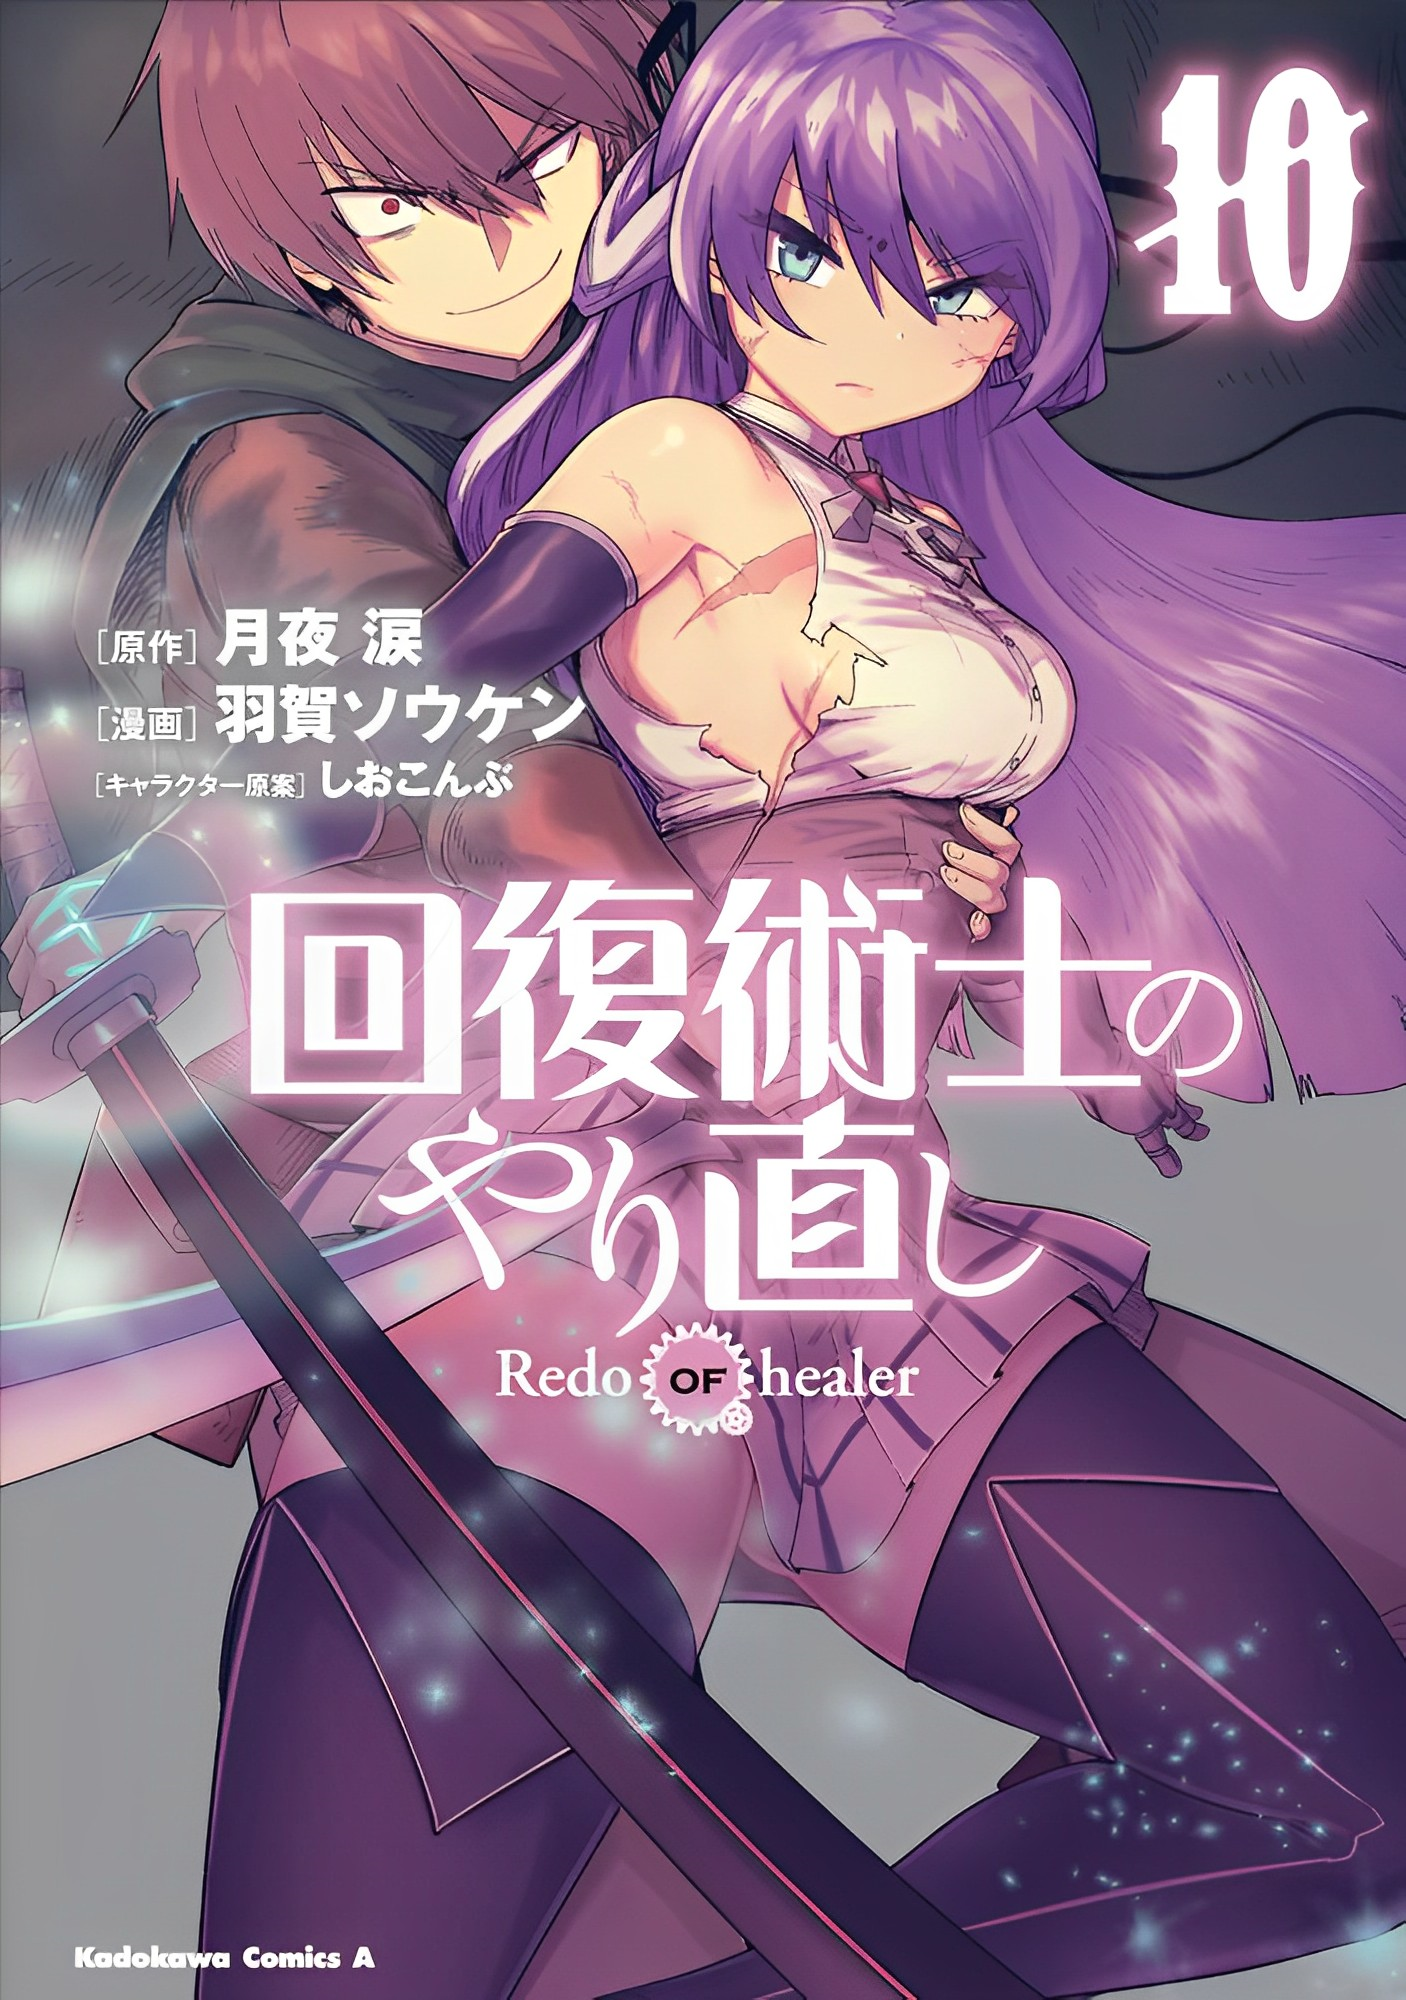 11 Manga Like Redo of Healer